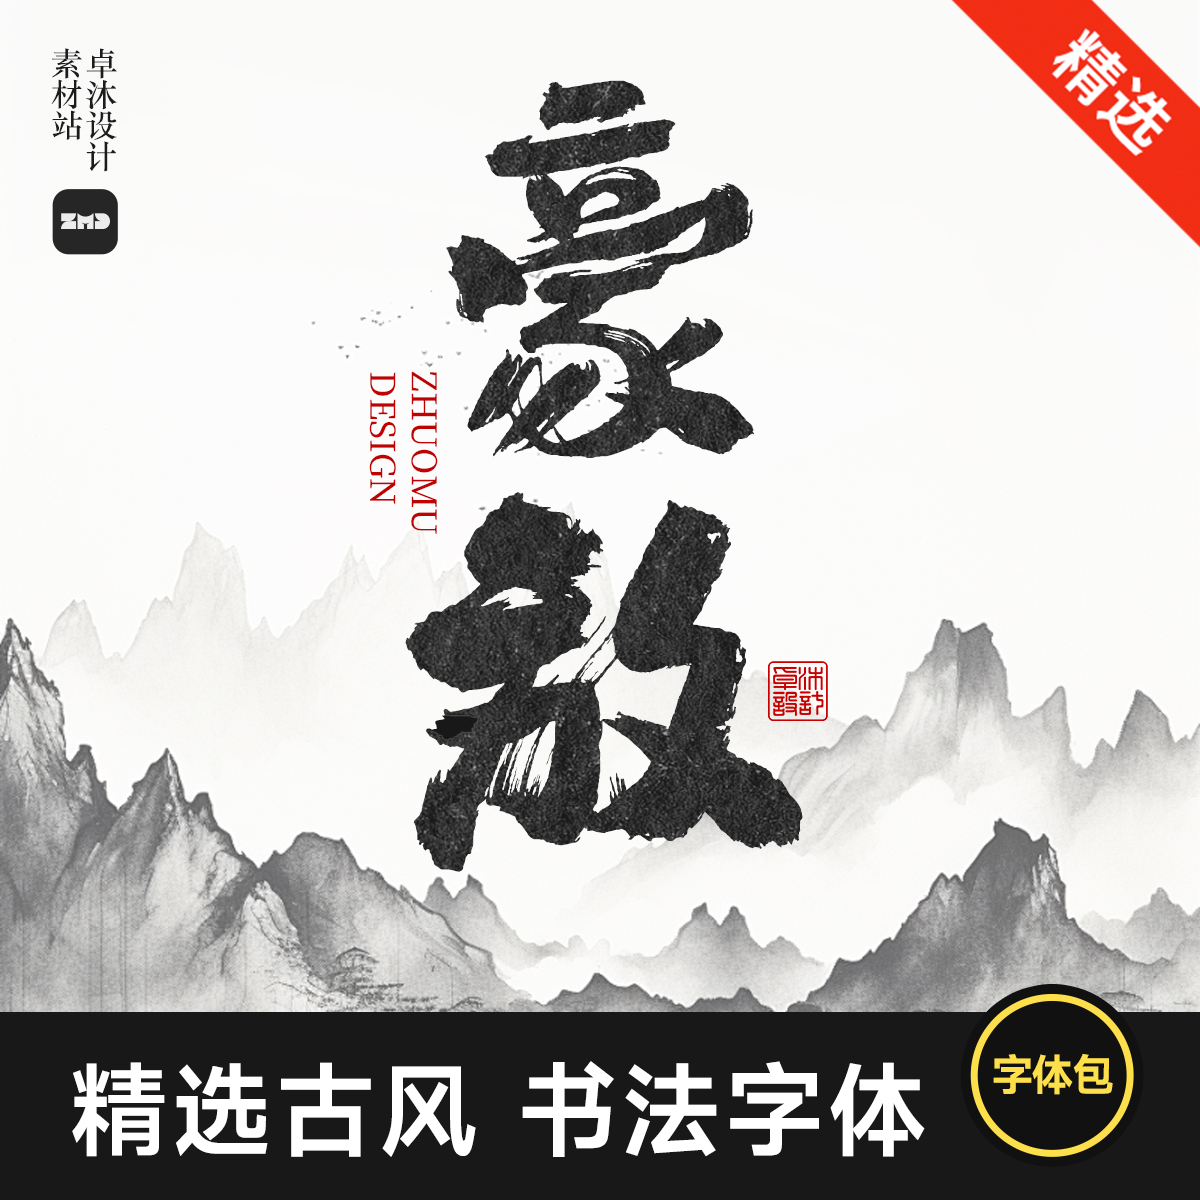 古风书法字体包下载 无版权免费商用 中式国潮毛笔电脑字体Ps/Ai